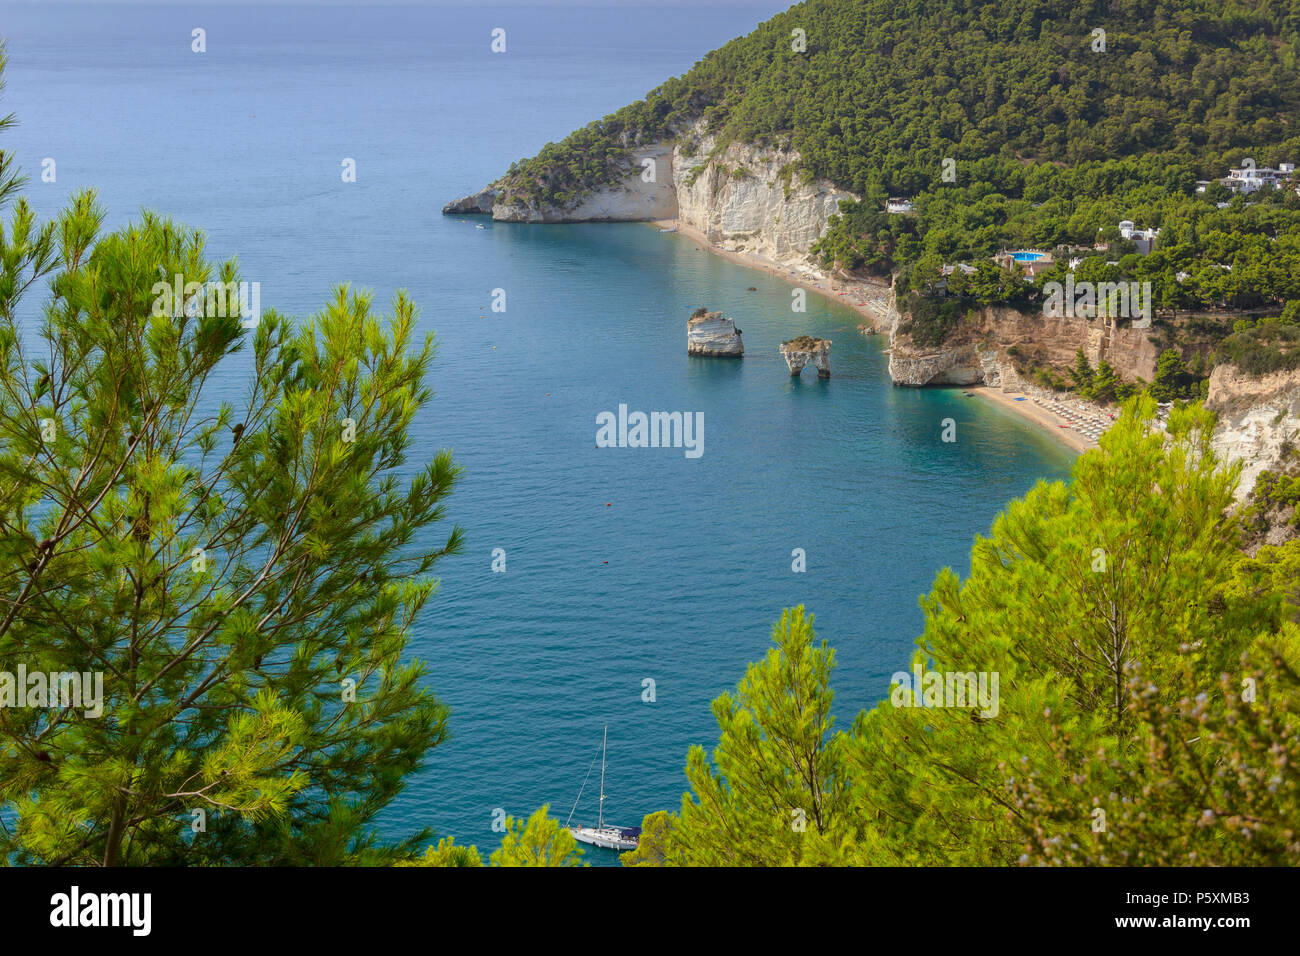 Les plus belles côtes de l'Italie:Zagare Bay (Pouilles).Les plages offrent une vue à couper le souffle avec des falaises karstiques blanc brigthly,mer bleu-émeraude. Banque D'Images